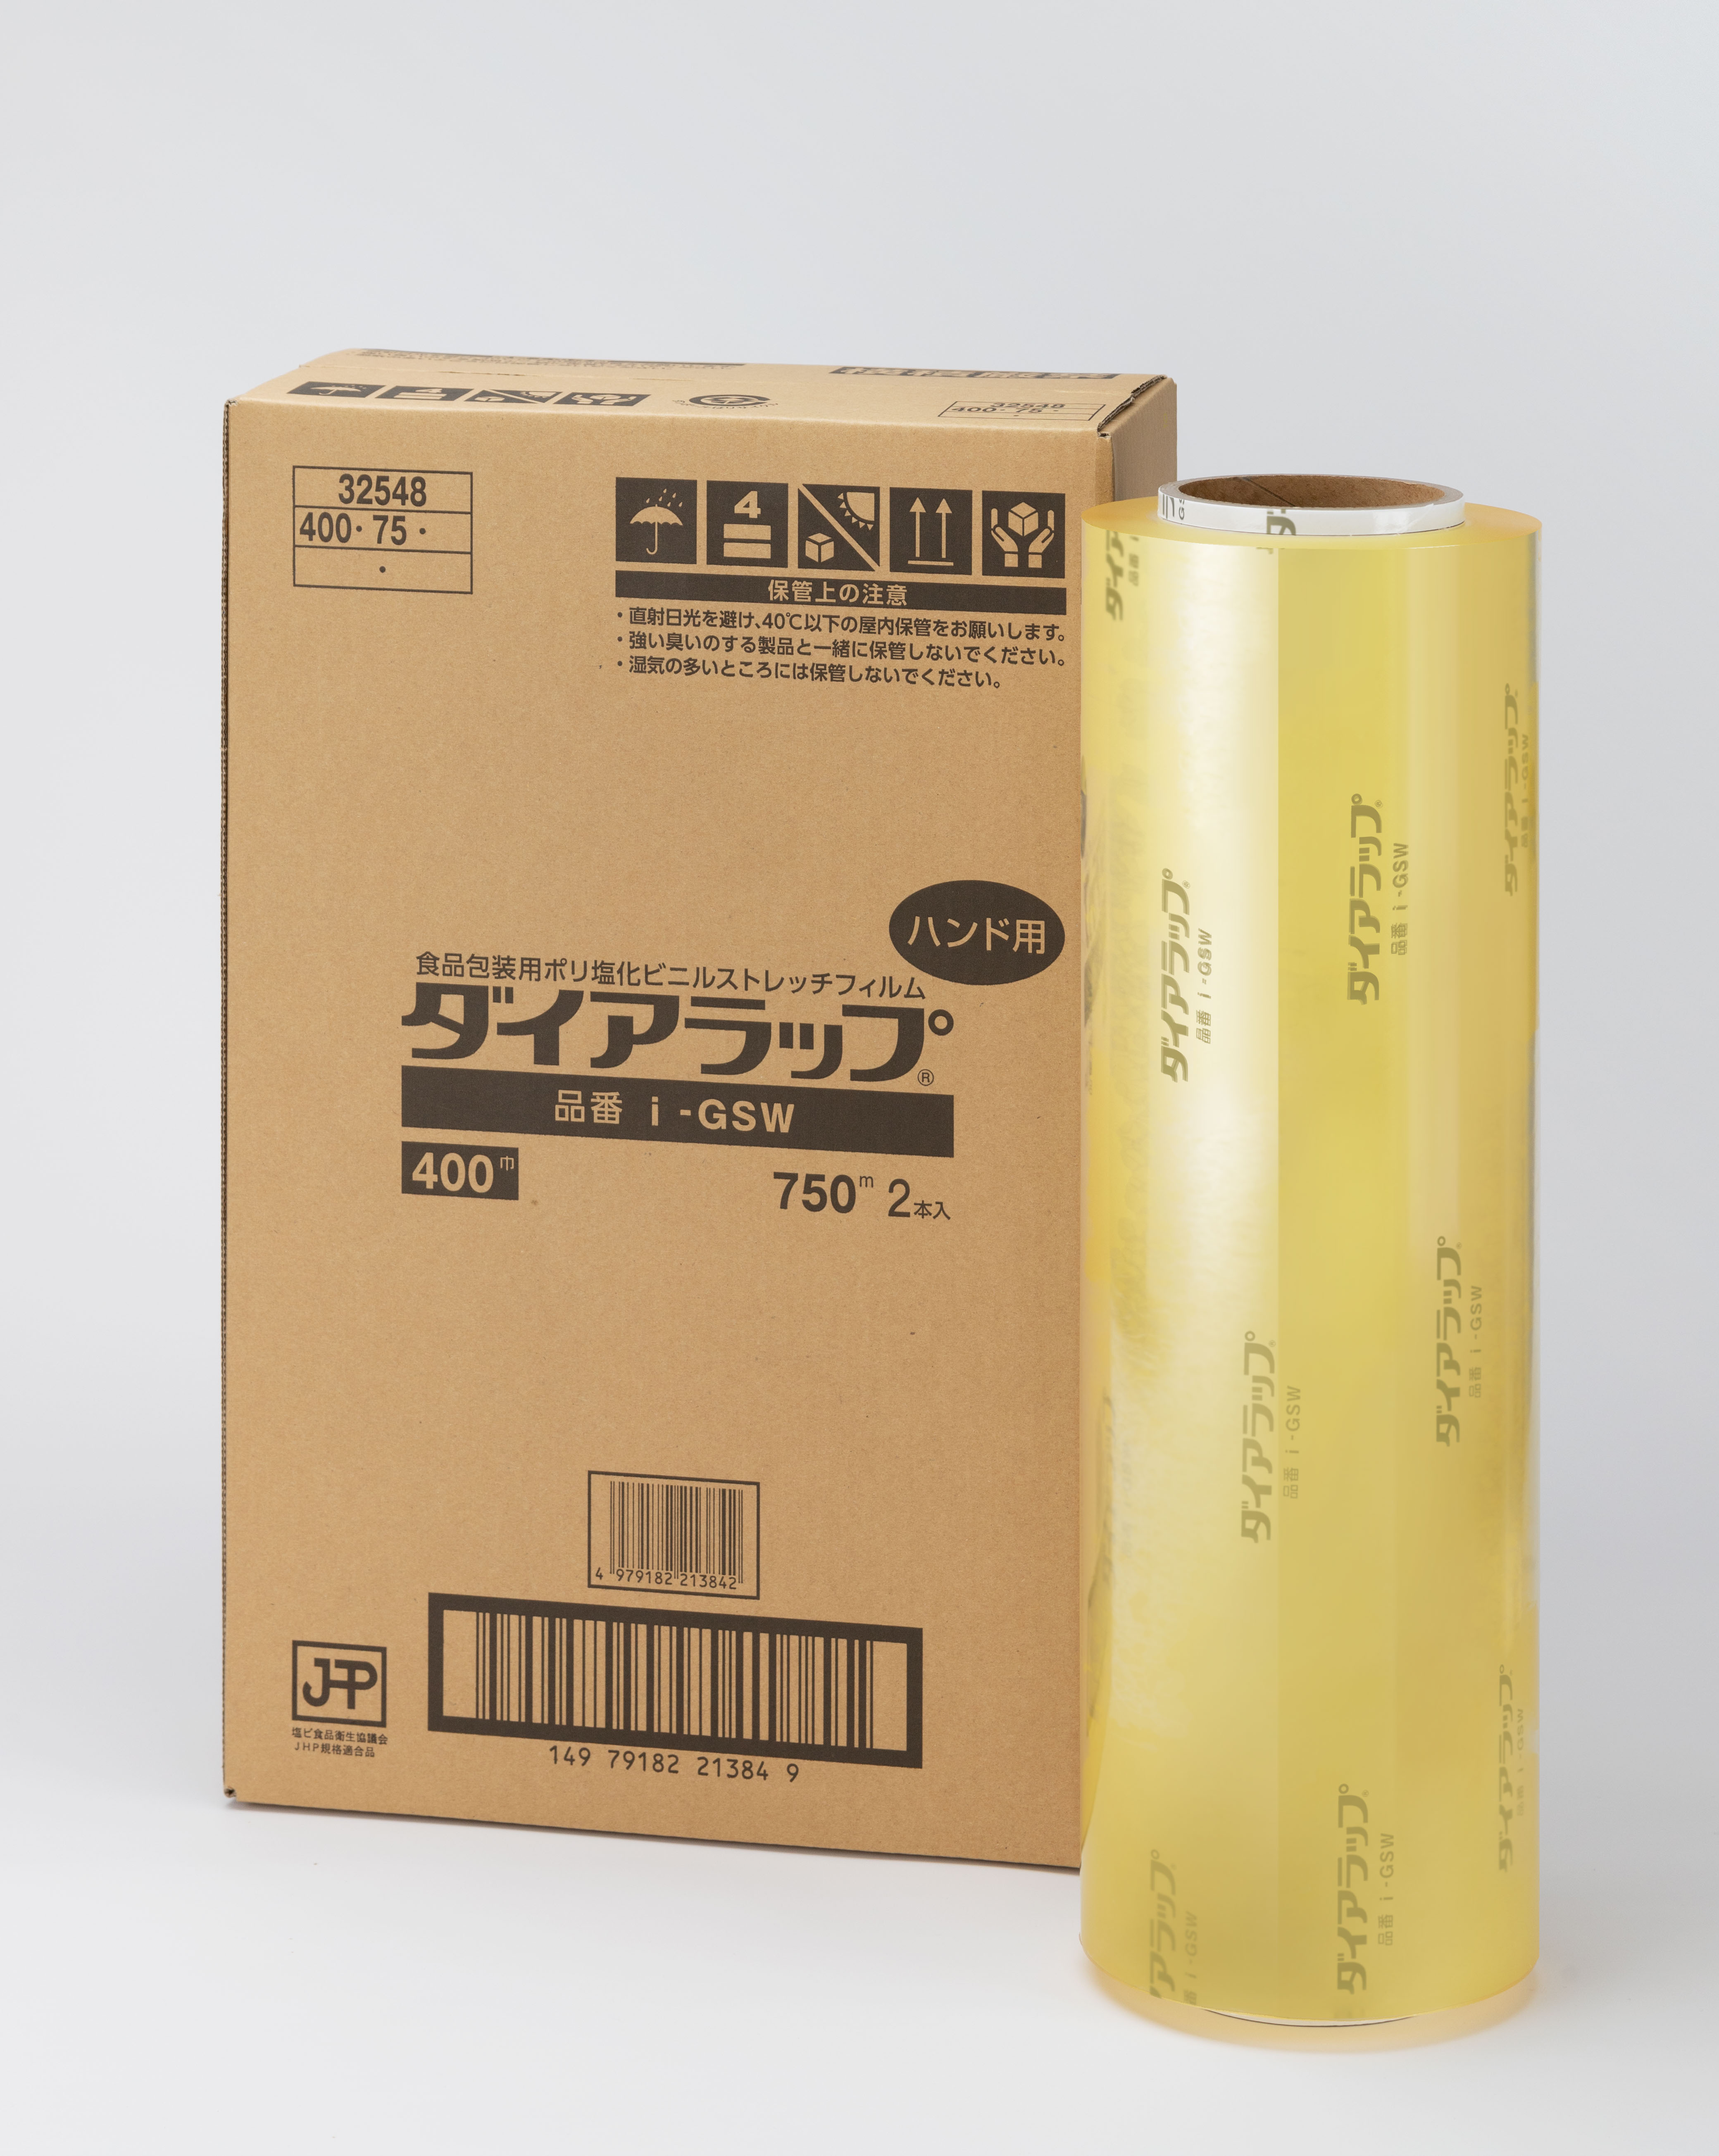 食品工場向けサイトダイアラップi-GSW 400㎜×750m 1箱2巻入: 食品用資材